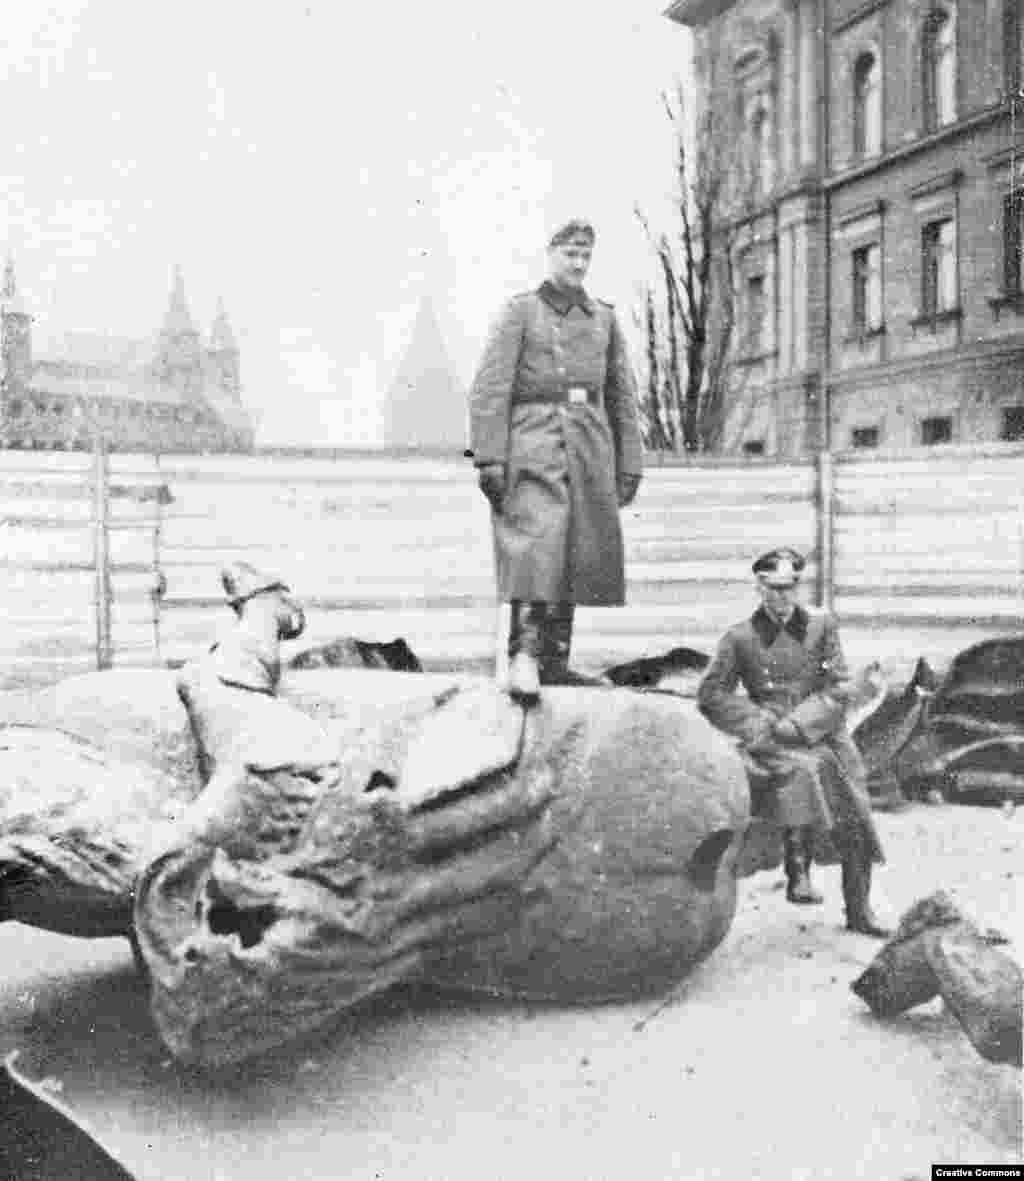 Части от статуята на полския крал Владислав II Ягело, разрушена от нацистките войски след инвазията в Полша през 1939 г.